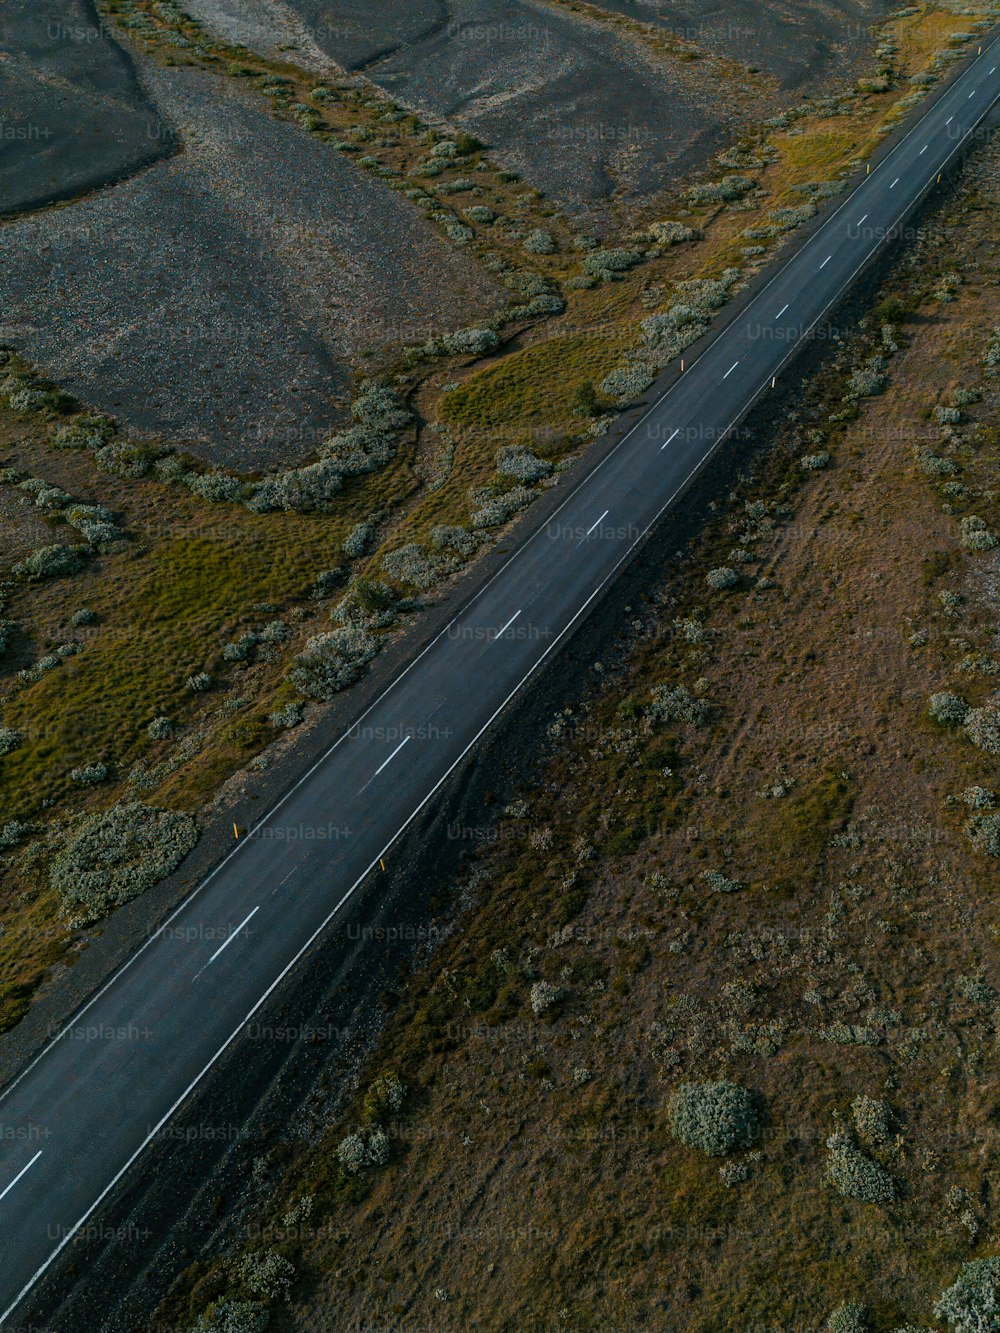 uma vista aérea de uma rodovia no meio do nada